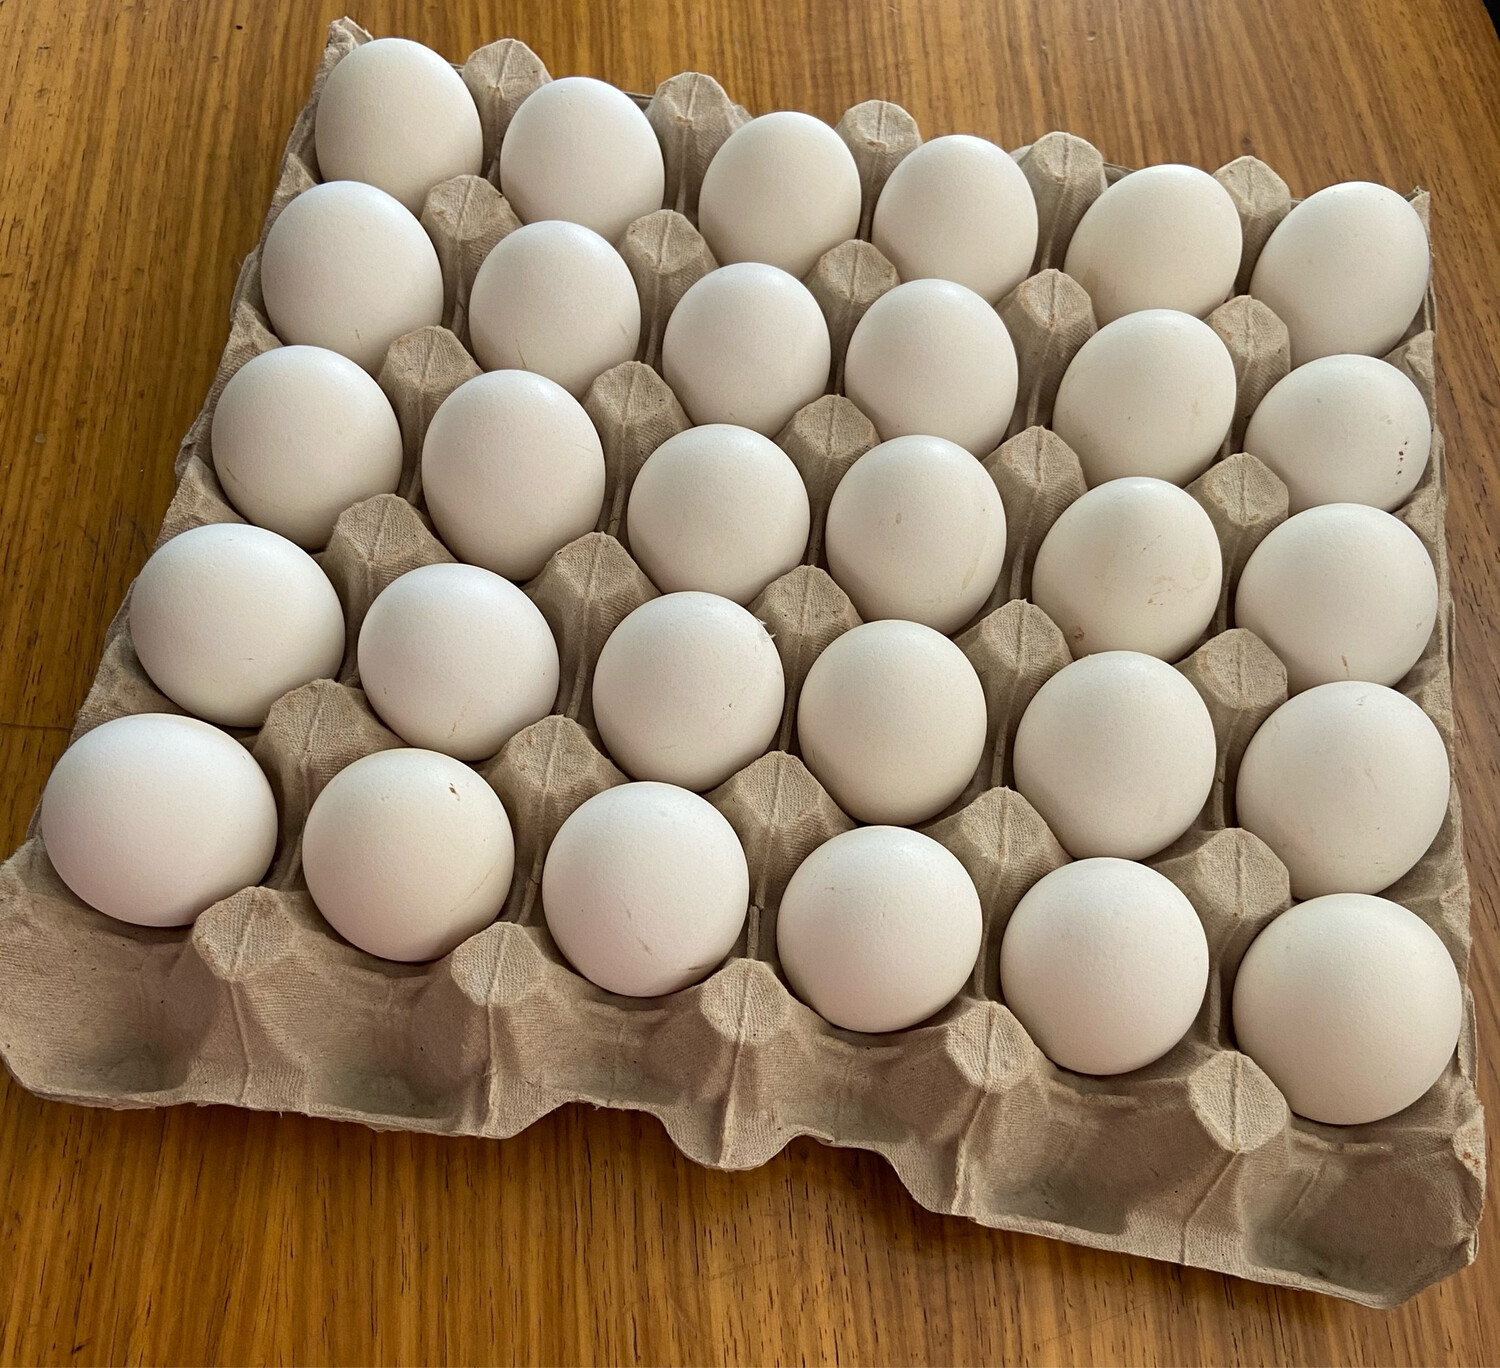 Free Range Eggs (30)